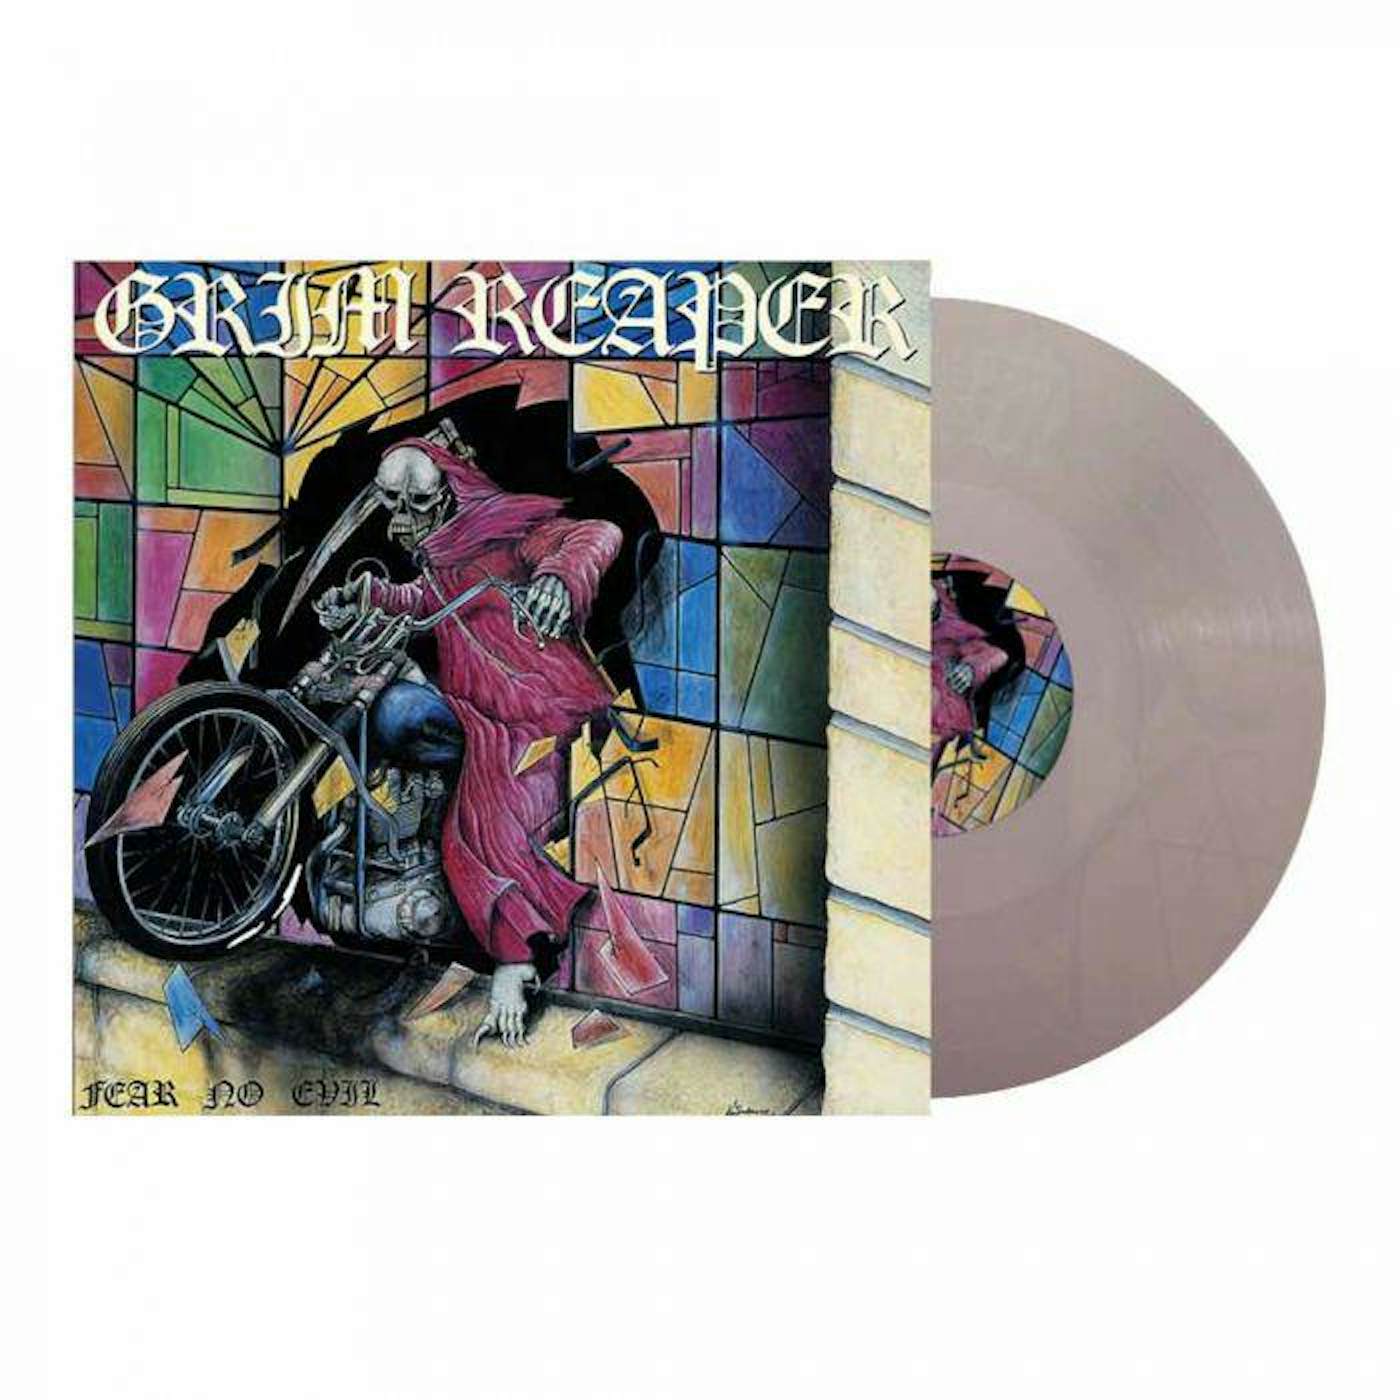 Grim Reaper Fear No Evil (Clear vinyl) vinyl record